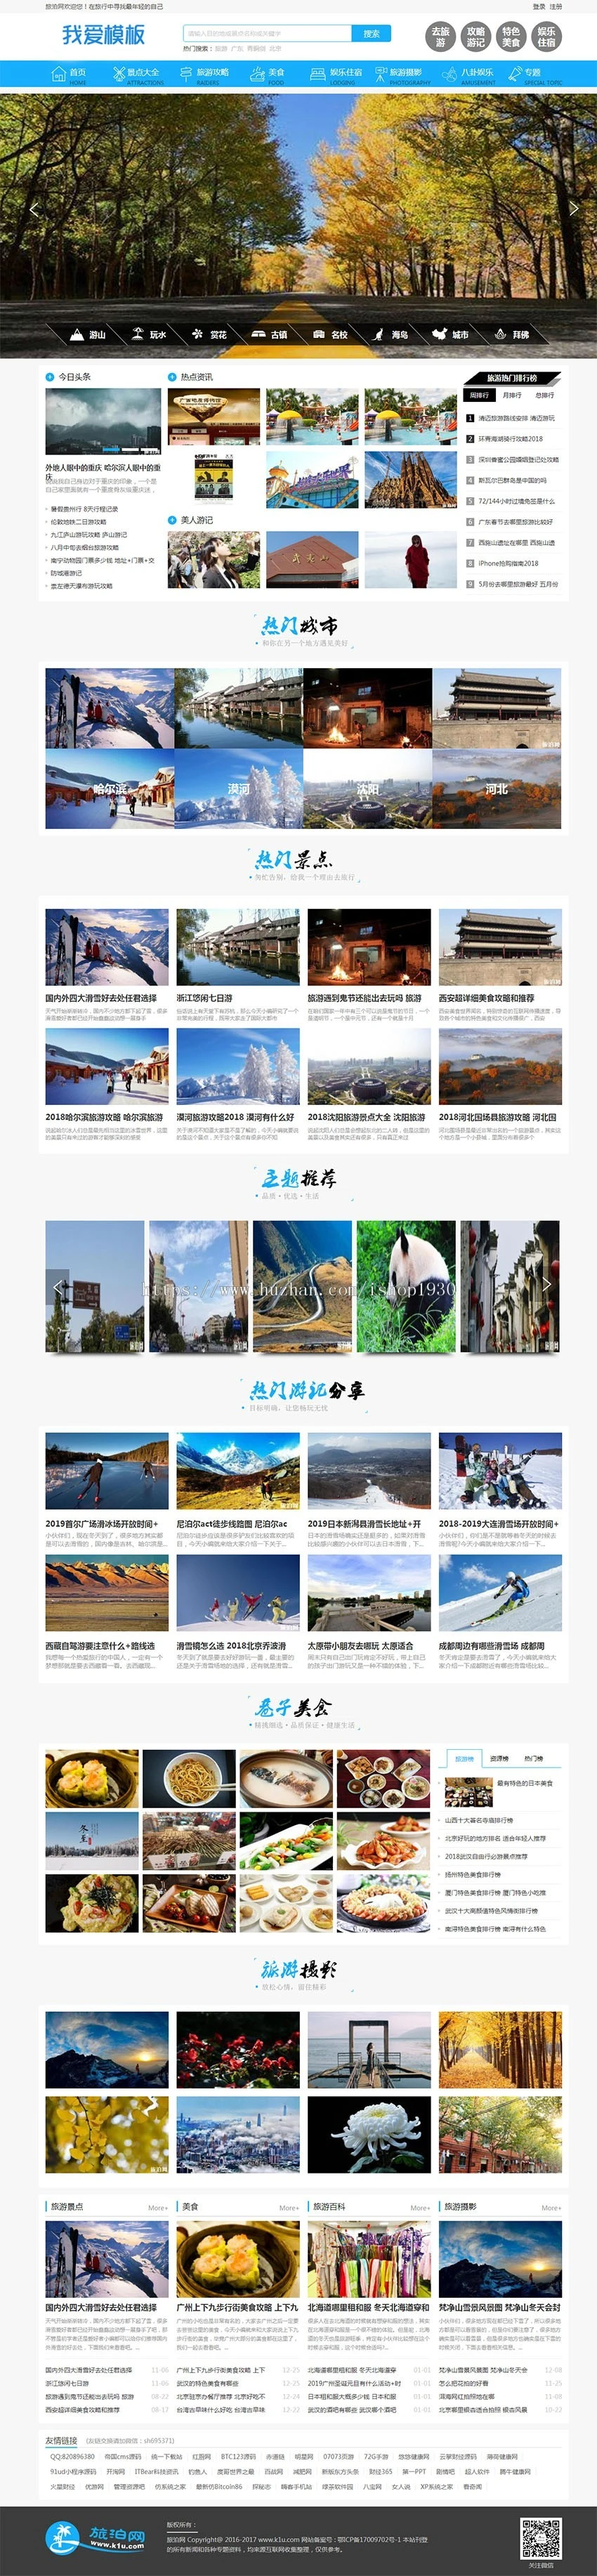 仿《旅泊网》源码 旅游资讯网站模板 旅游文章+会员投稿 +自动采集